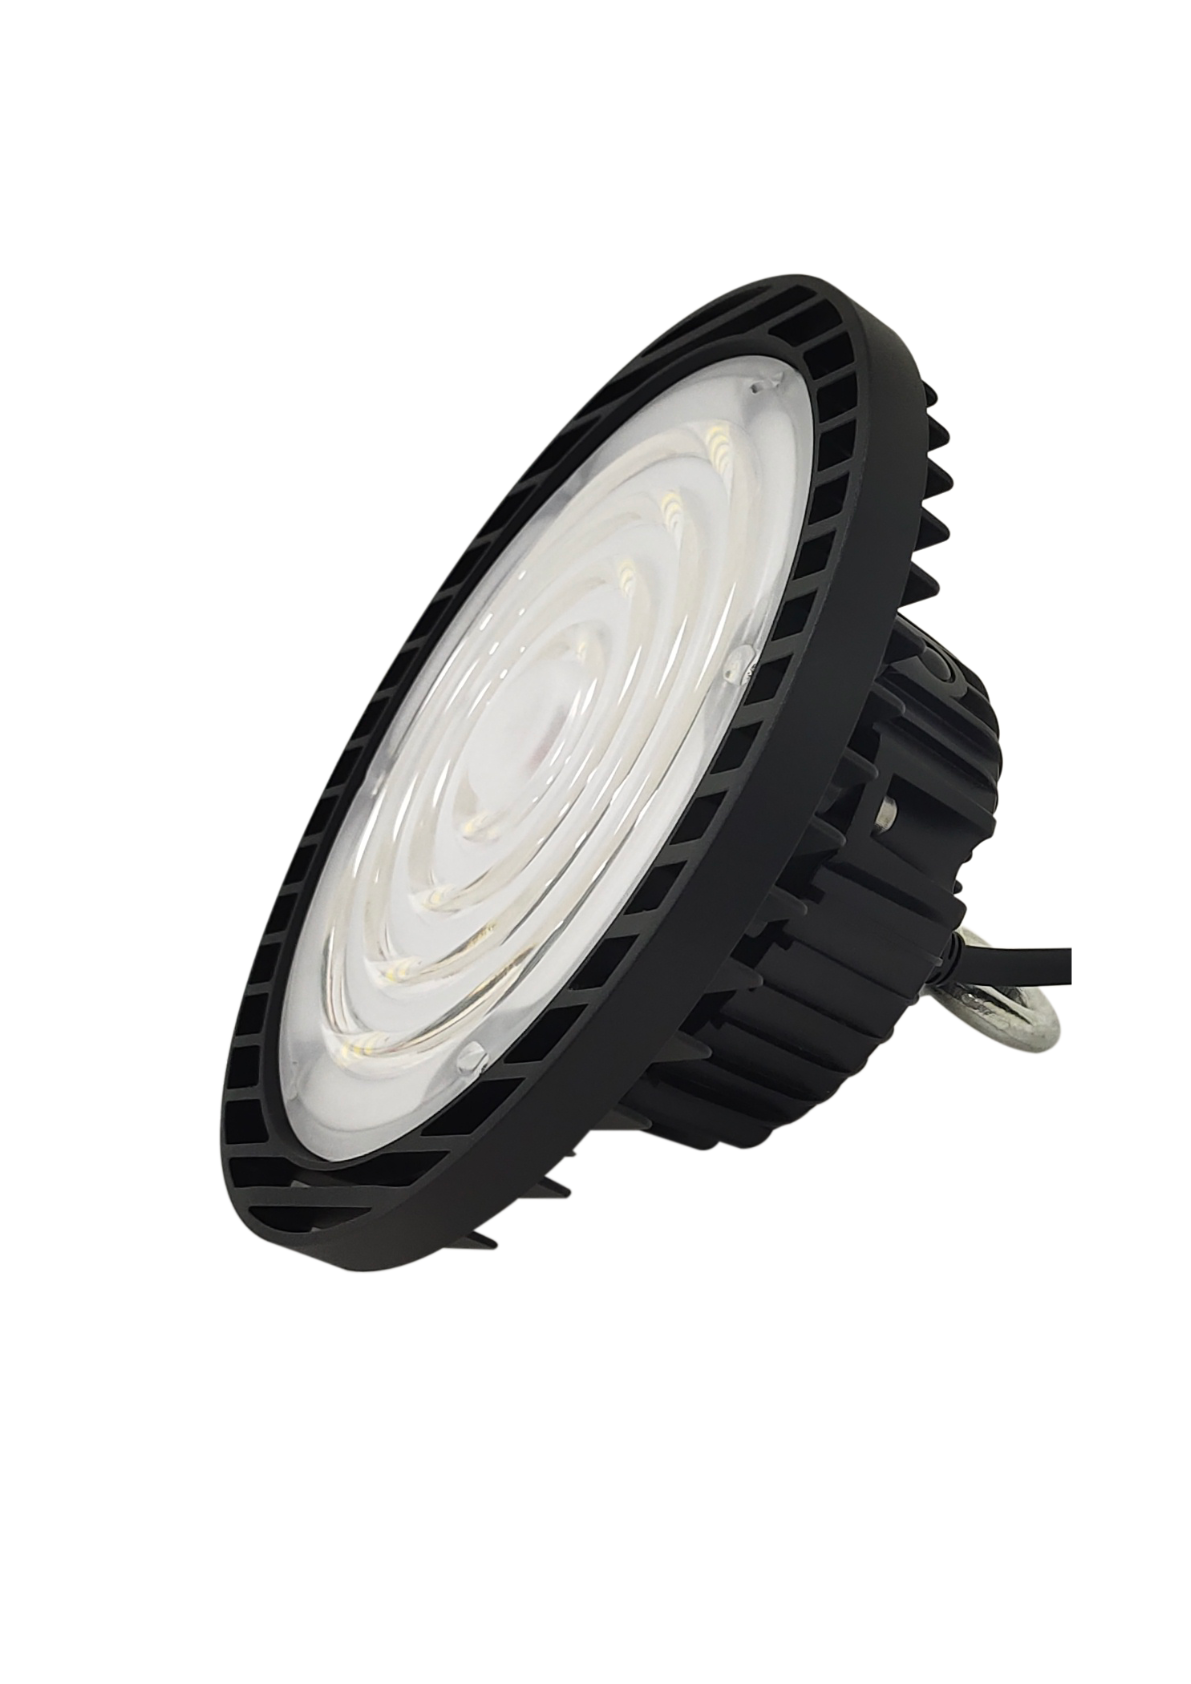 LED-HighBay, UFO, anpassbare Leistung und Licht, 60-100 W, 3000-6500 K, 9600-16000 lm, IP65, LIFUD, 9-in-1 Leuchte, hohe Effizienz